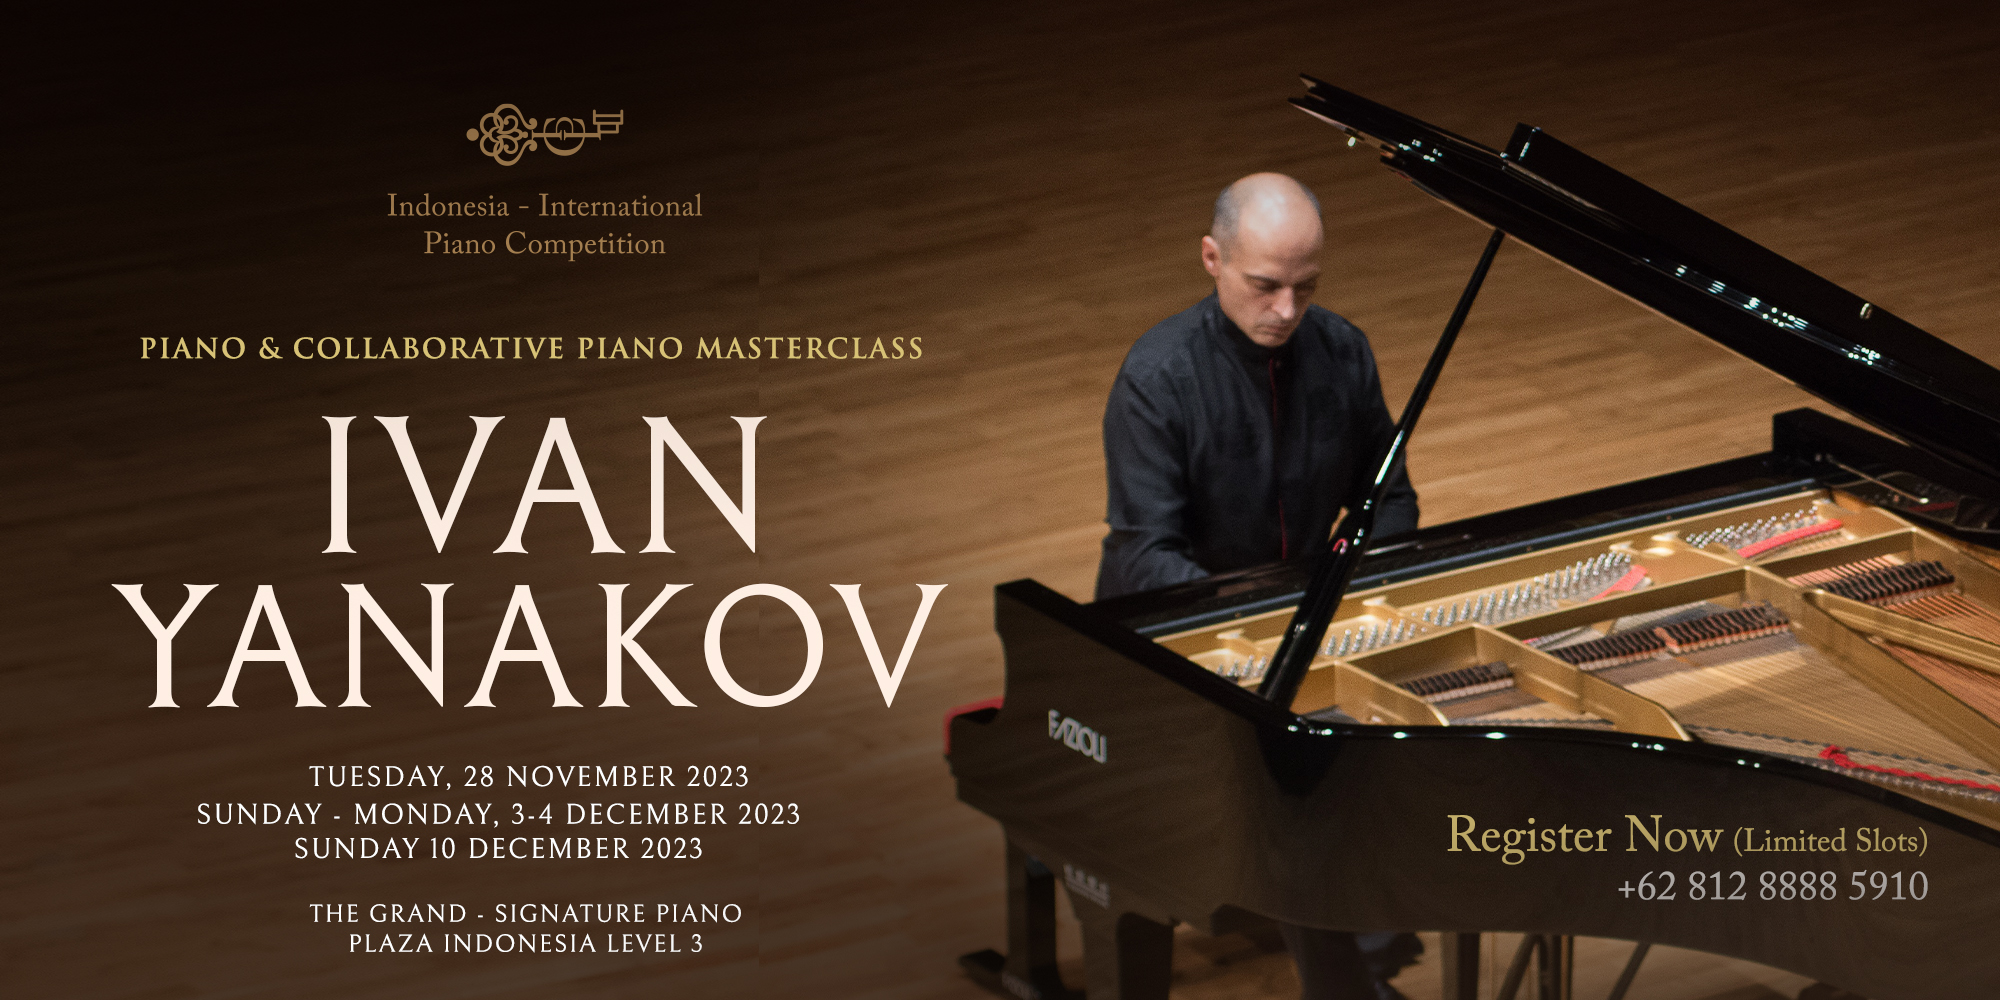 Piano & Collaborative Piano Masterclass